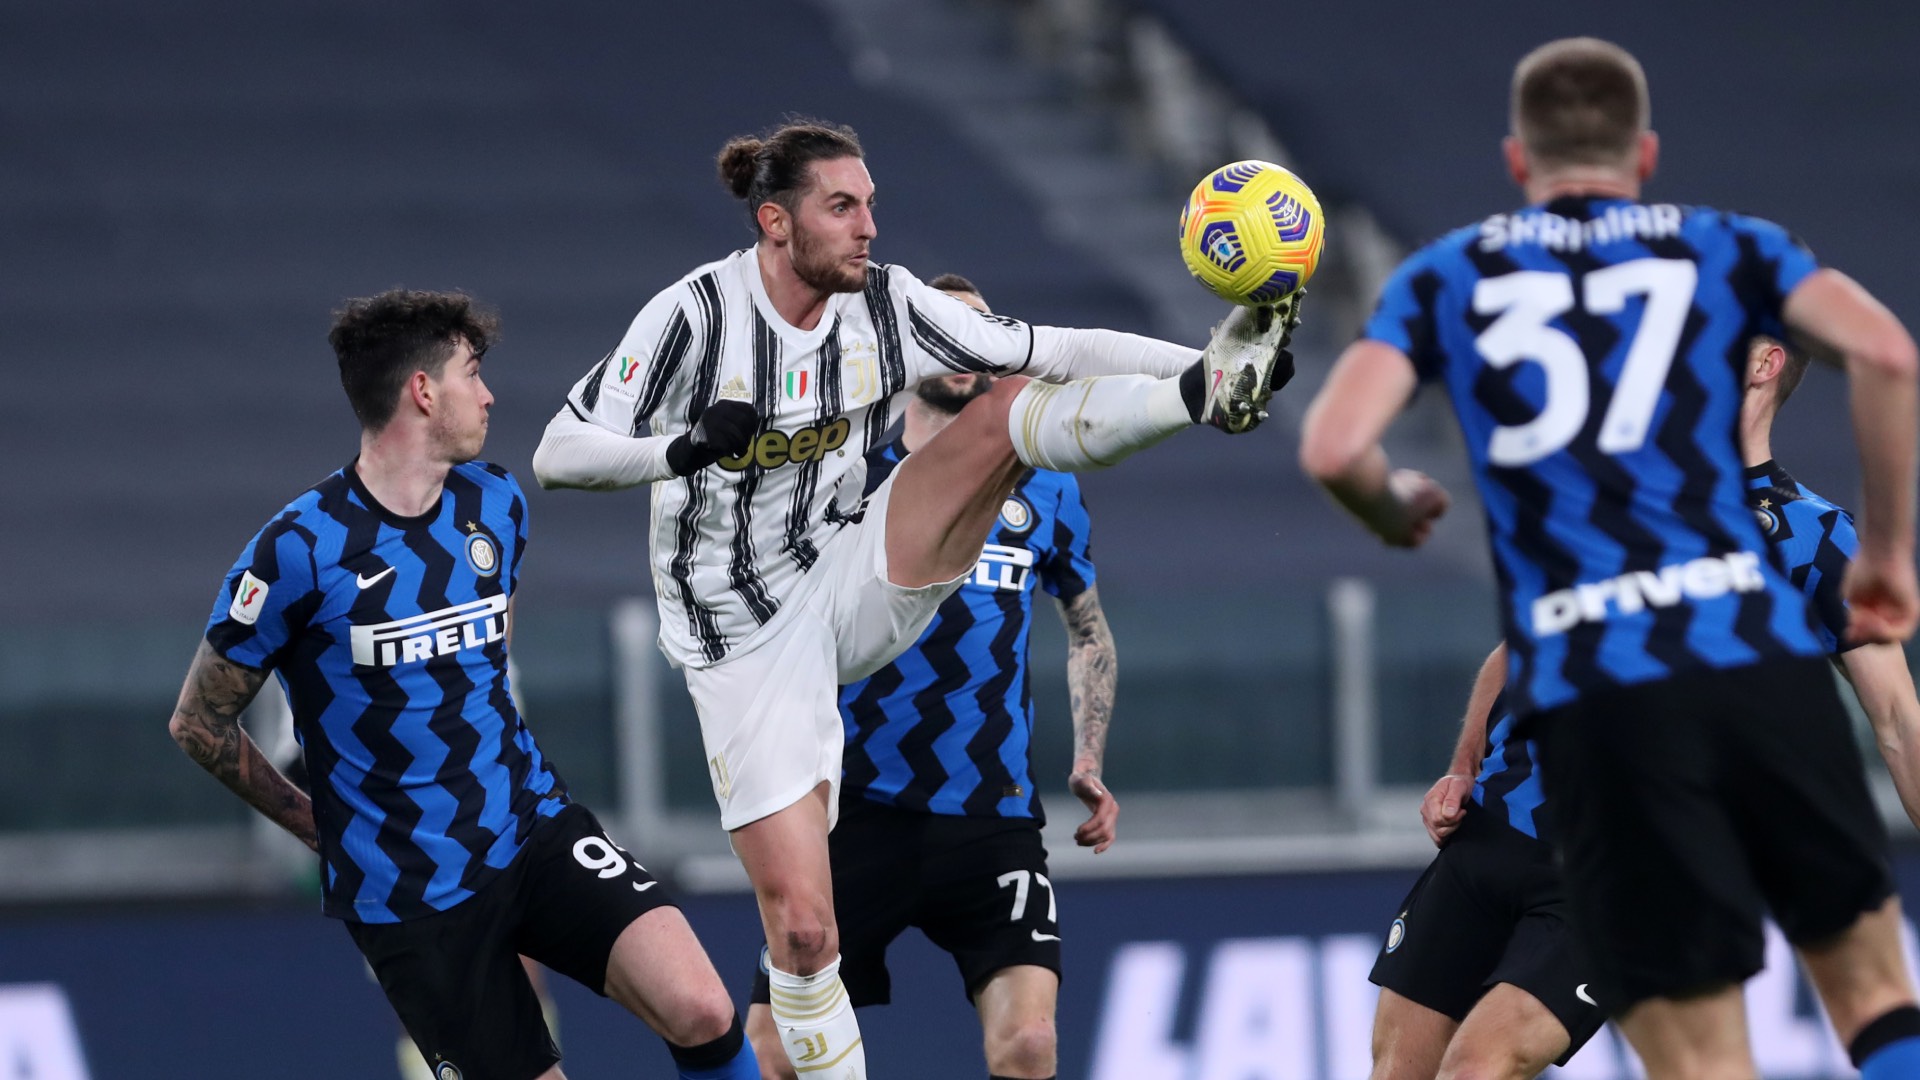 Risultato immagini per Juventus inter coppa italia 0 a 0